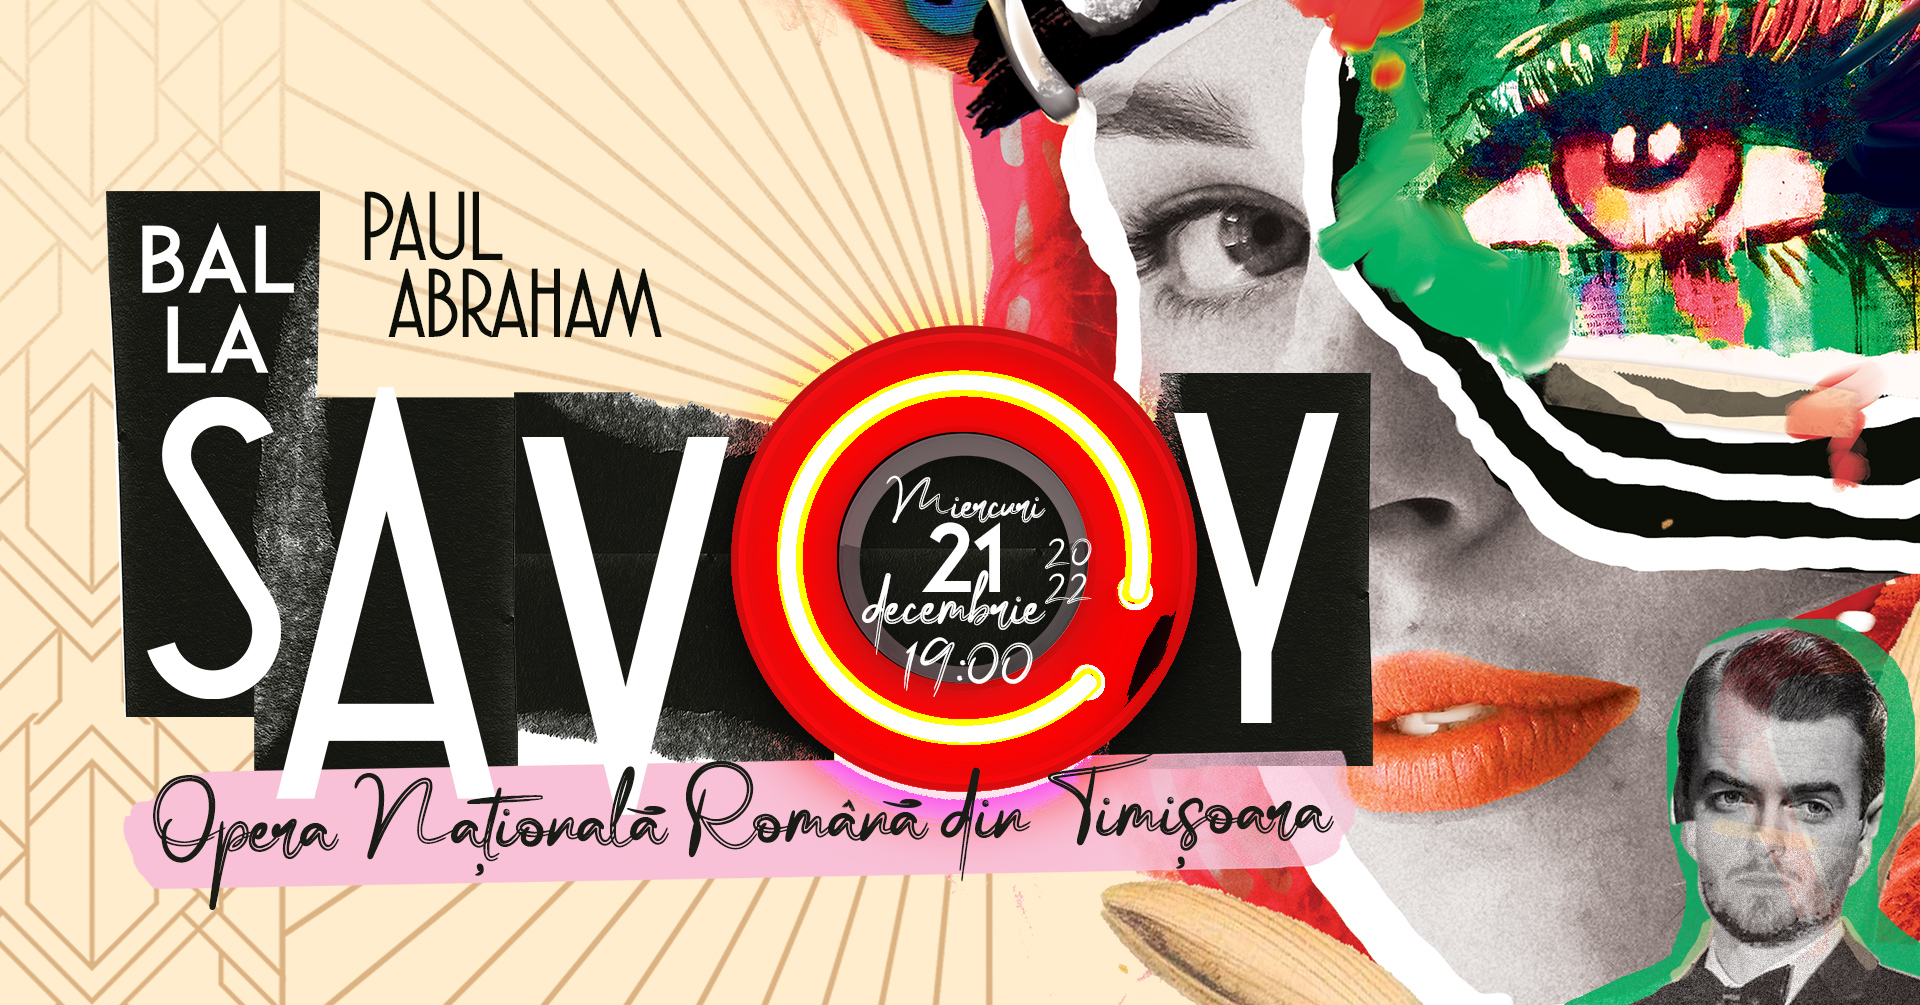 Interviuri cu realizatorii spectacolului „Bal la Savoy” de Paul Abraham, cea mai recentă producție a Operei Naționale Române din Timișoara